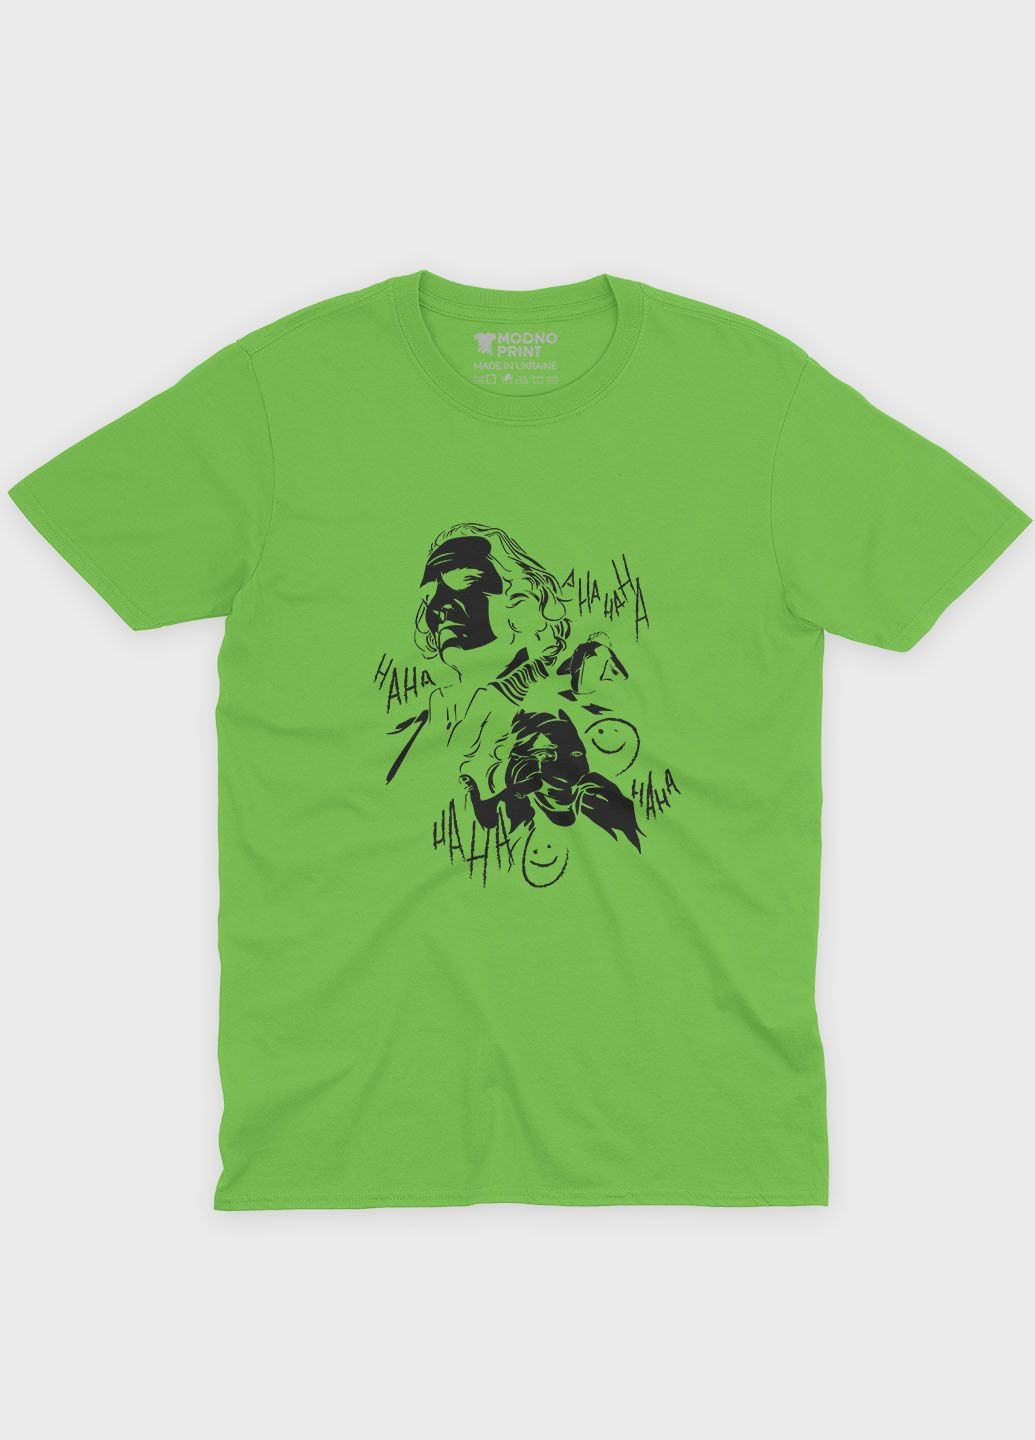 Салатовая демисезонная футболка для мальчика с принтом супервора - джокер (ts001-1-kiw-006-005-024-b) Modno